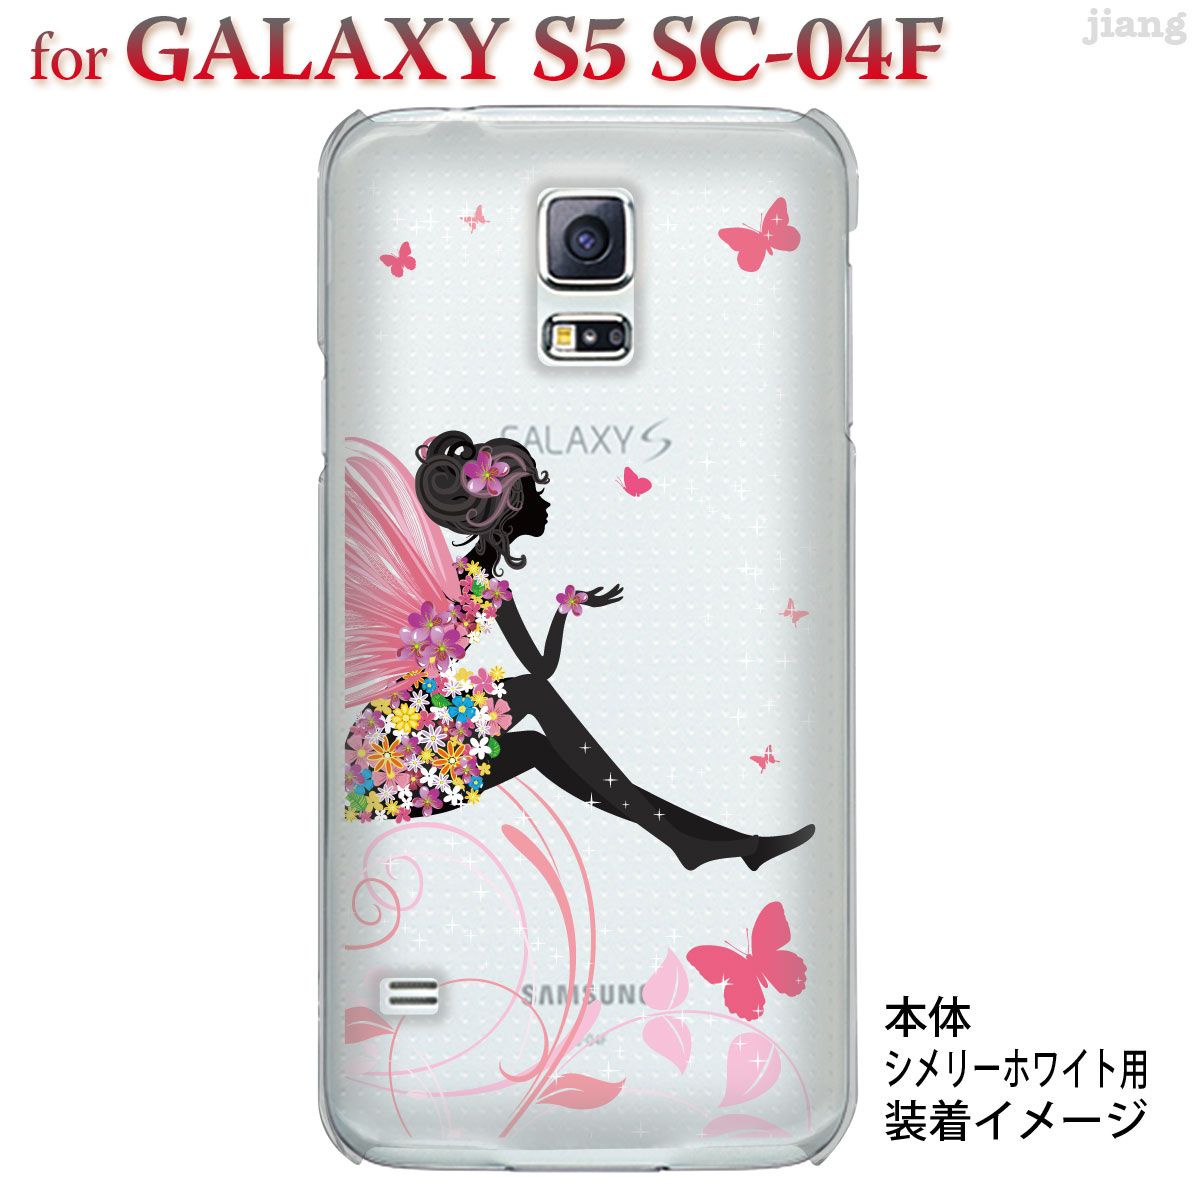 ギャラクシーs5 Sc 04fケース ジアン Jiang Galaxy S5 Sc 04f ケース カバー Arts かわいい きれい Clear スマホケース 22 Sc04f Ca0093 新着セール おしゃれ クリアケース フェアリー